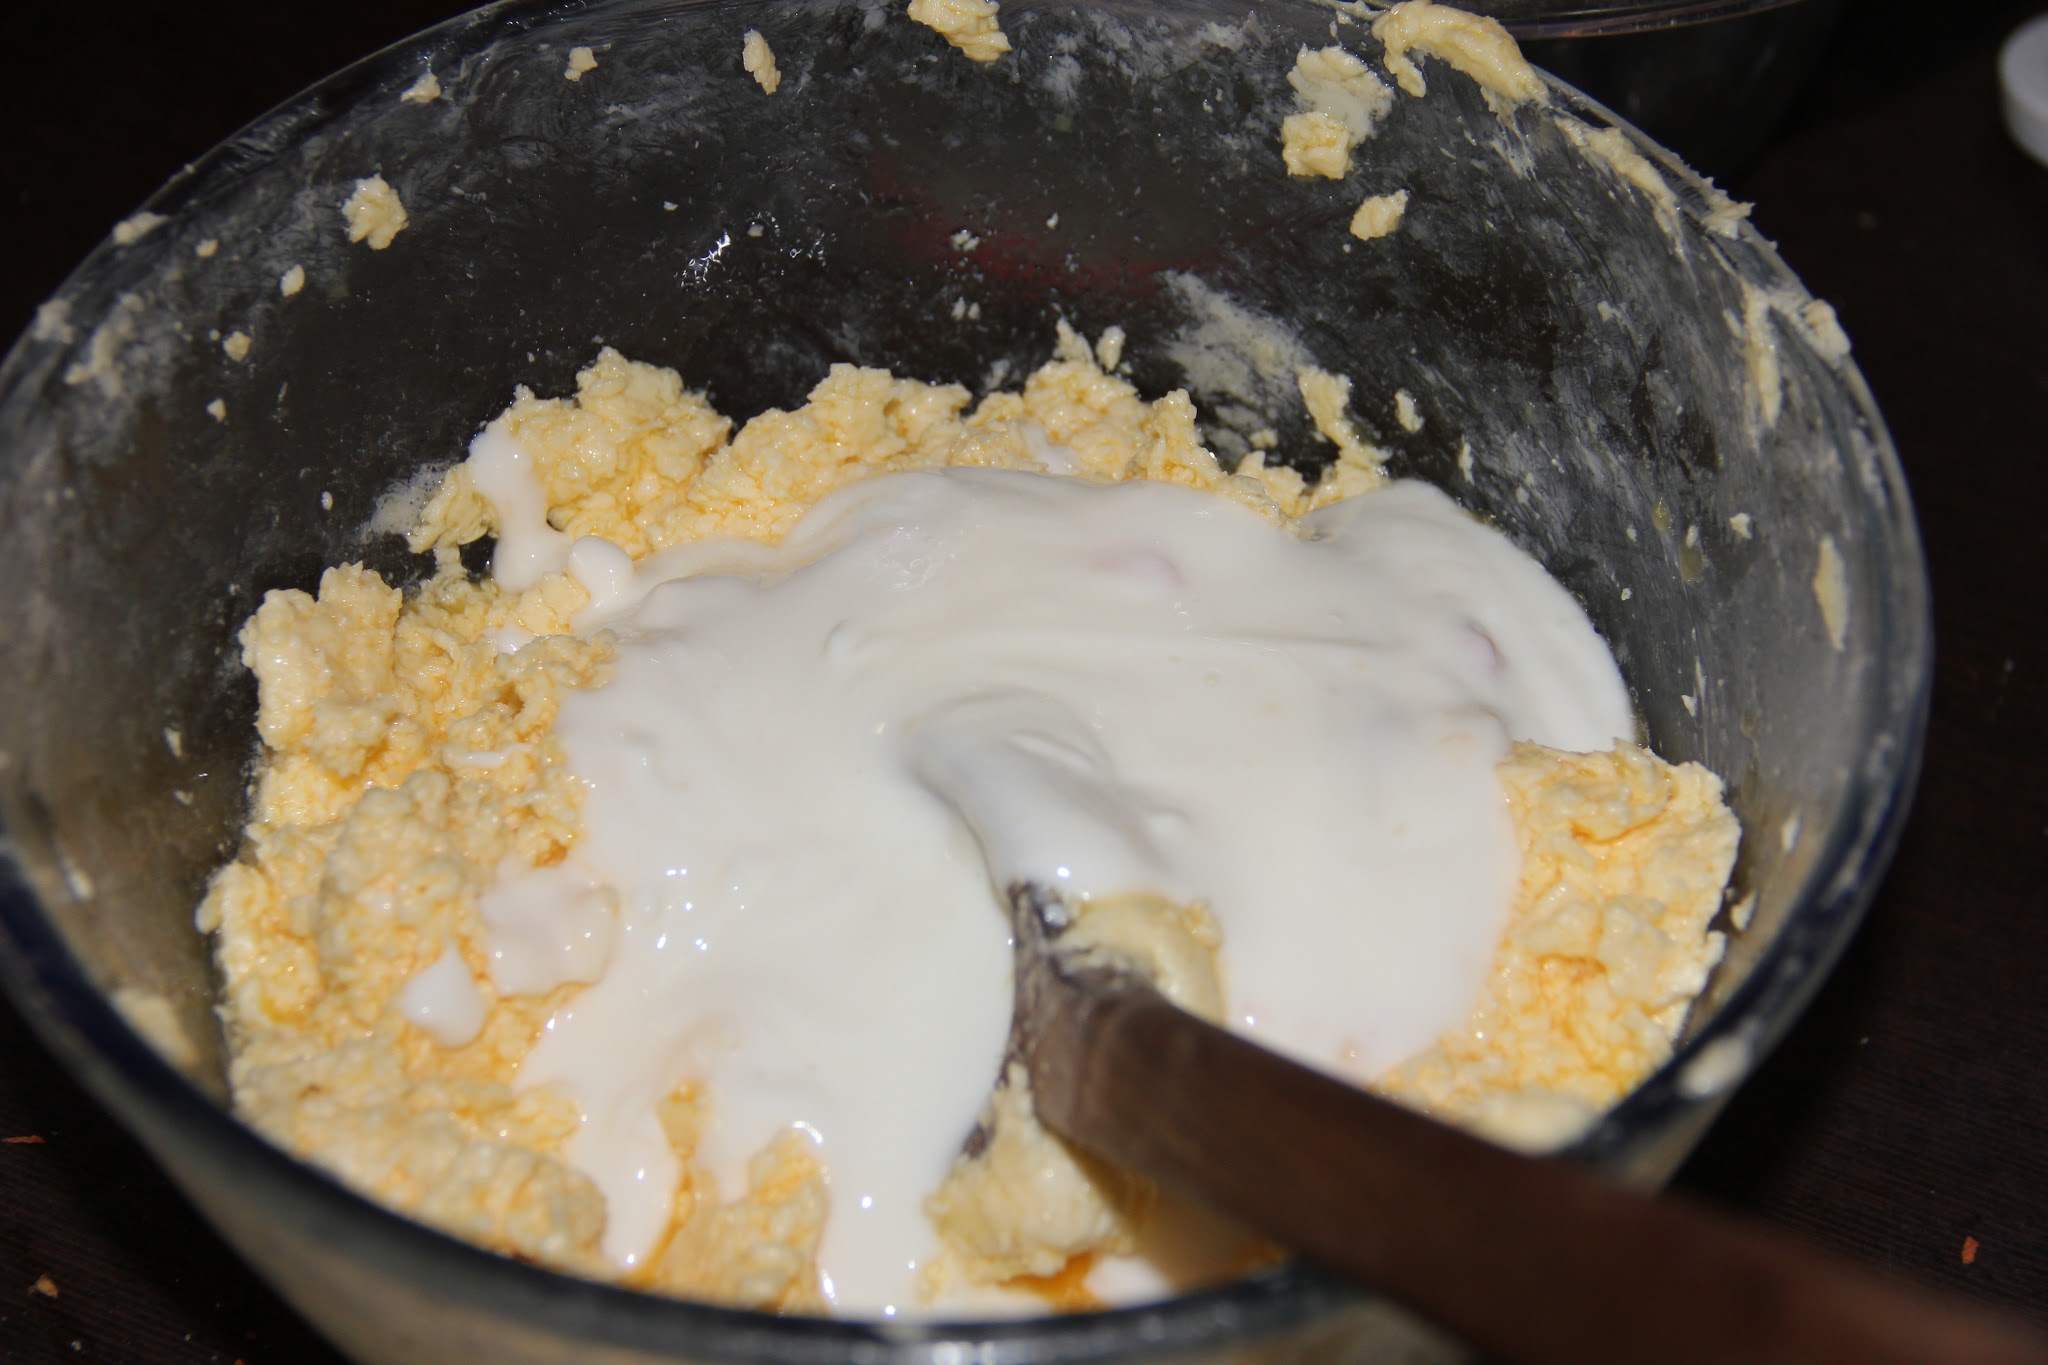 Čia į visą tą sviesto, cukraus ir kiaušinių mišinį įpiltas jogurtas (belekoks - šaldytuve radau su persikais)